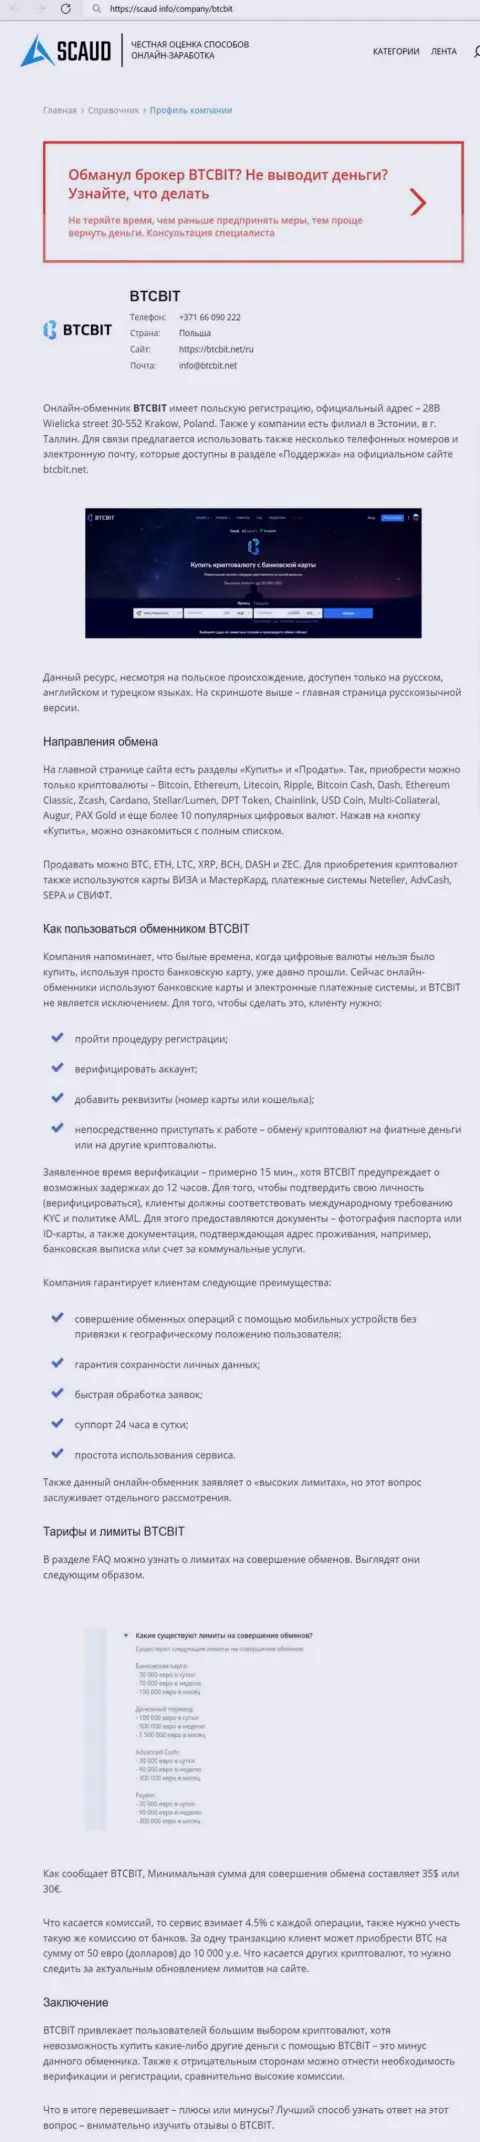 Детальный обзор деятельности организации BTCBit Net на веб-портале Scaud Info